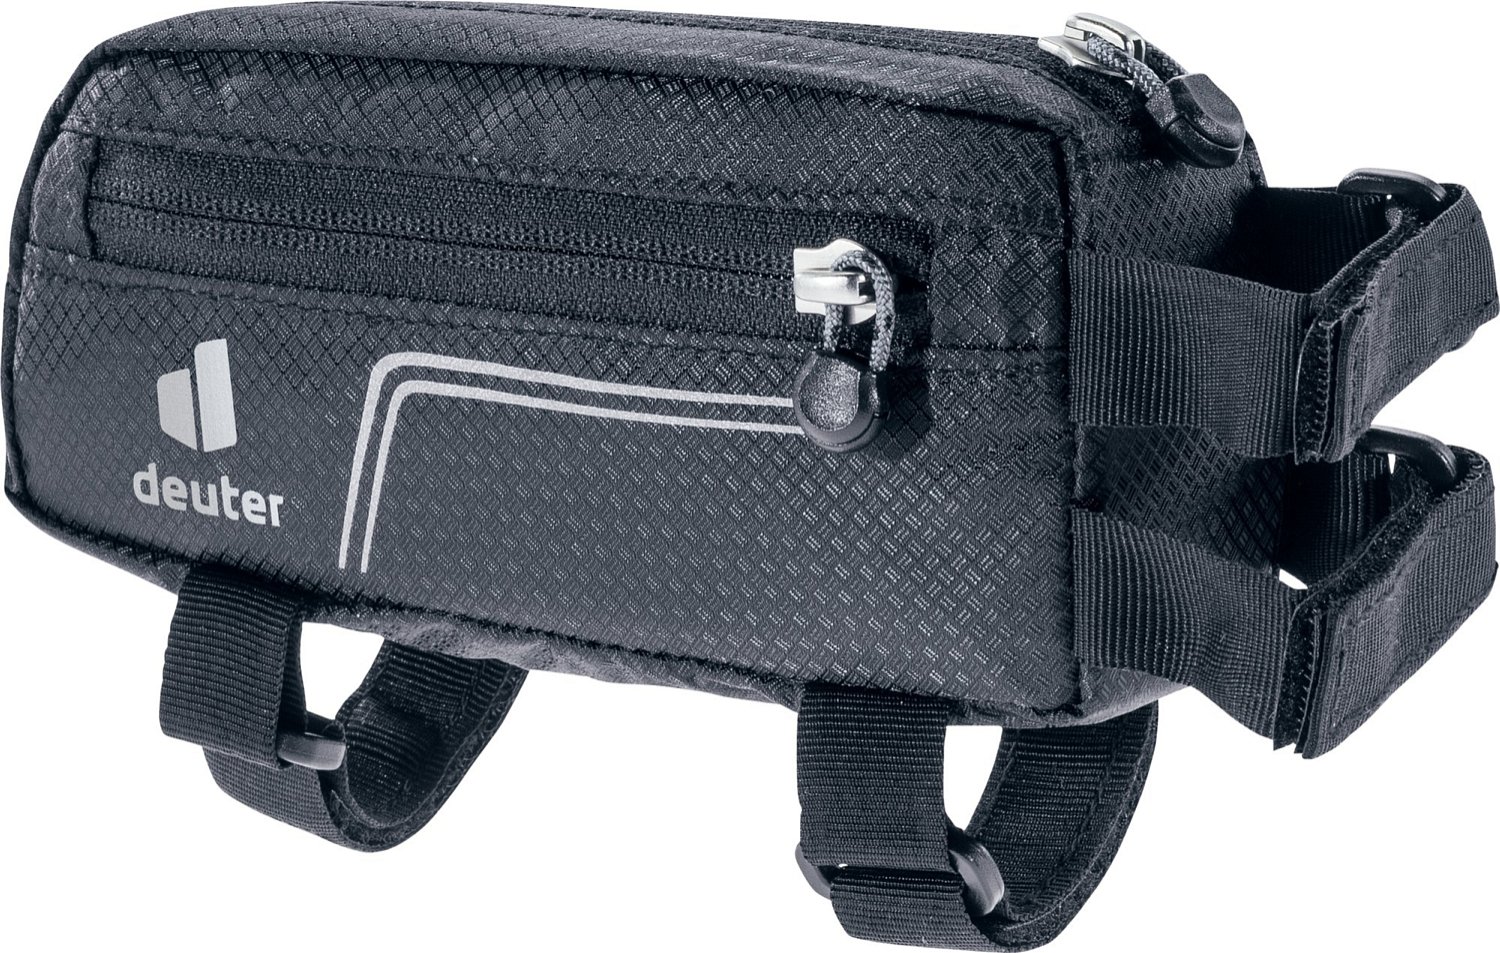 Велосумка Deuter Energy Bag, 0.5 л, на раму, Black, 2021, 3290221_7000 сумка велосипедная green cycle triangle bag black на раму